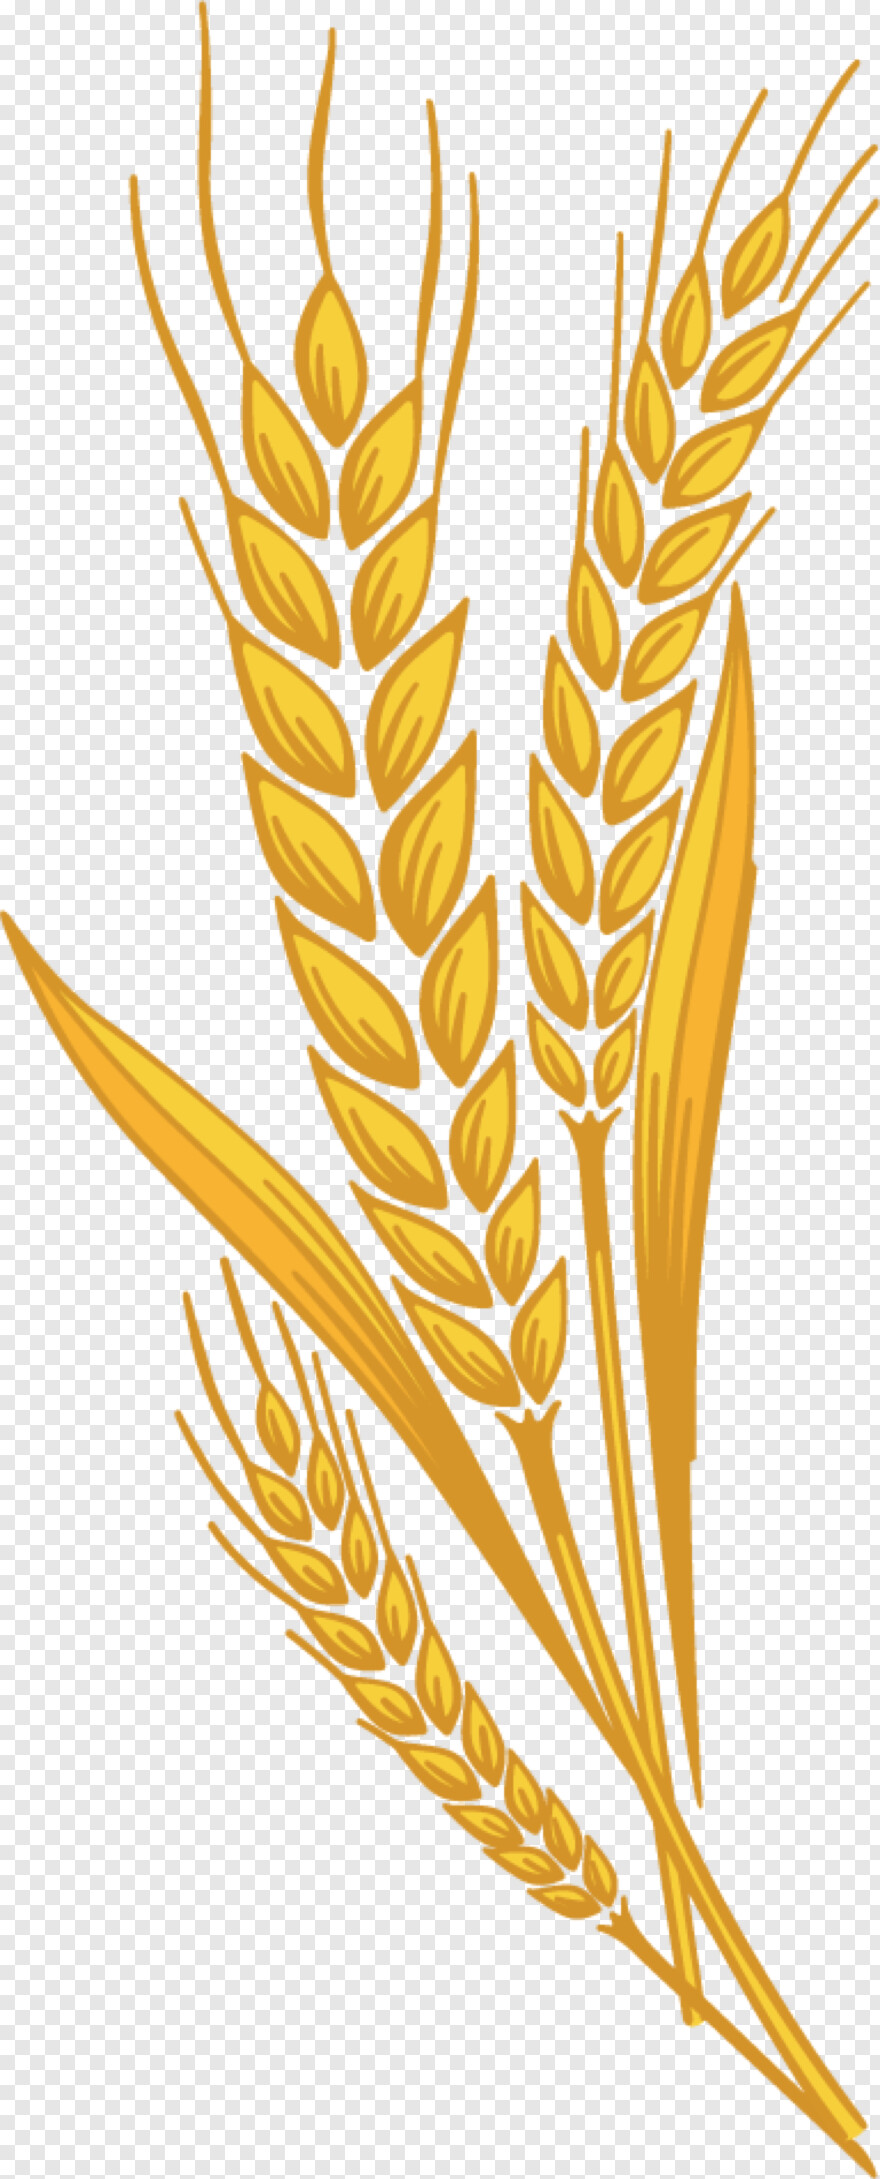 barley # 403017